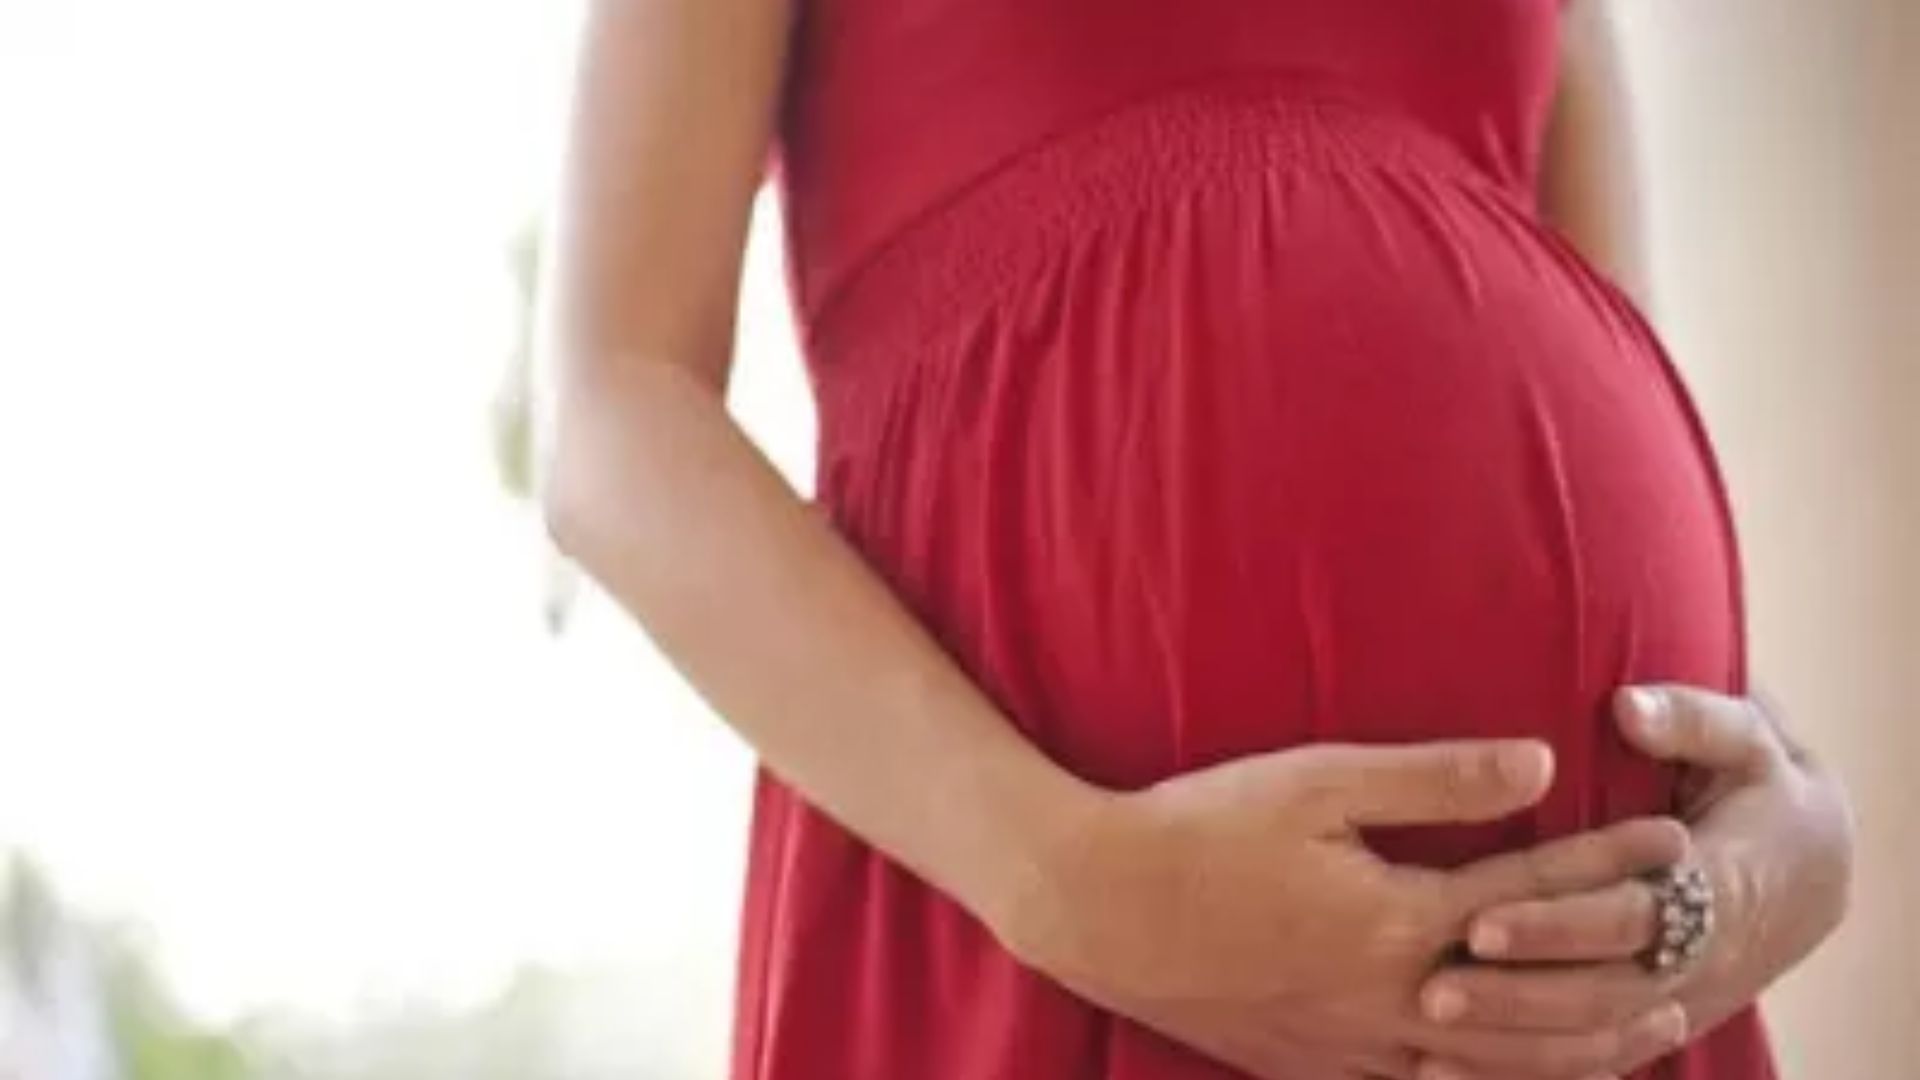 बरेली: गर्भावस्था के समय बरतें सावधानी, बच्चा हो सकता है क्लेफ्ट लिप